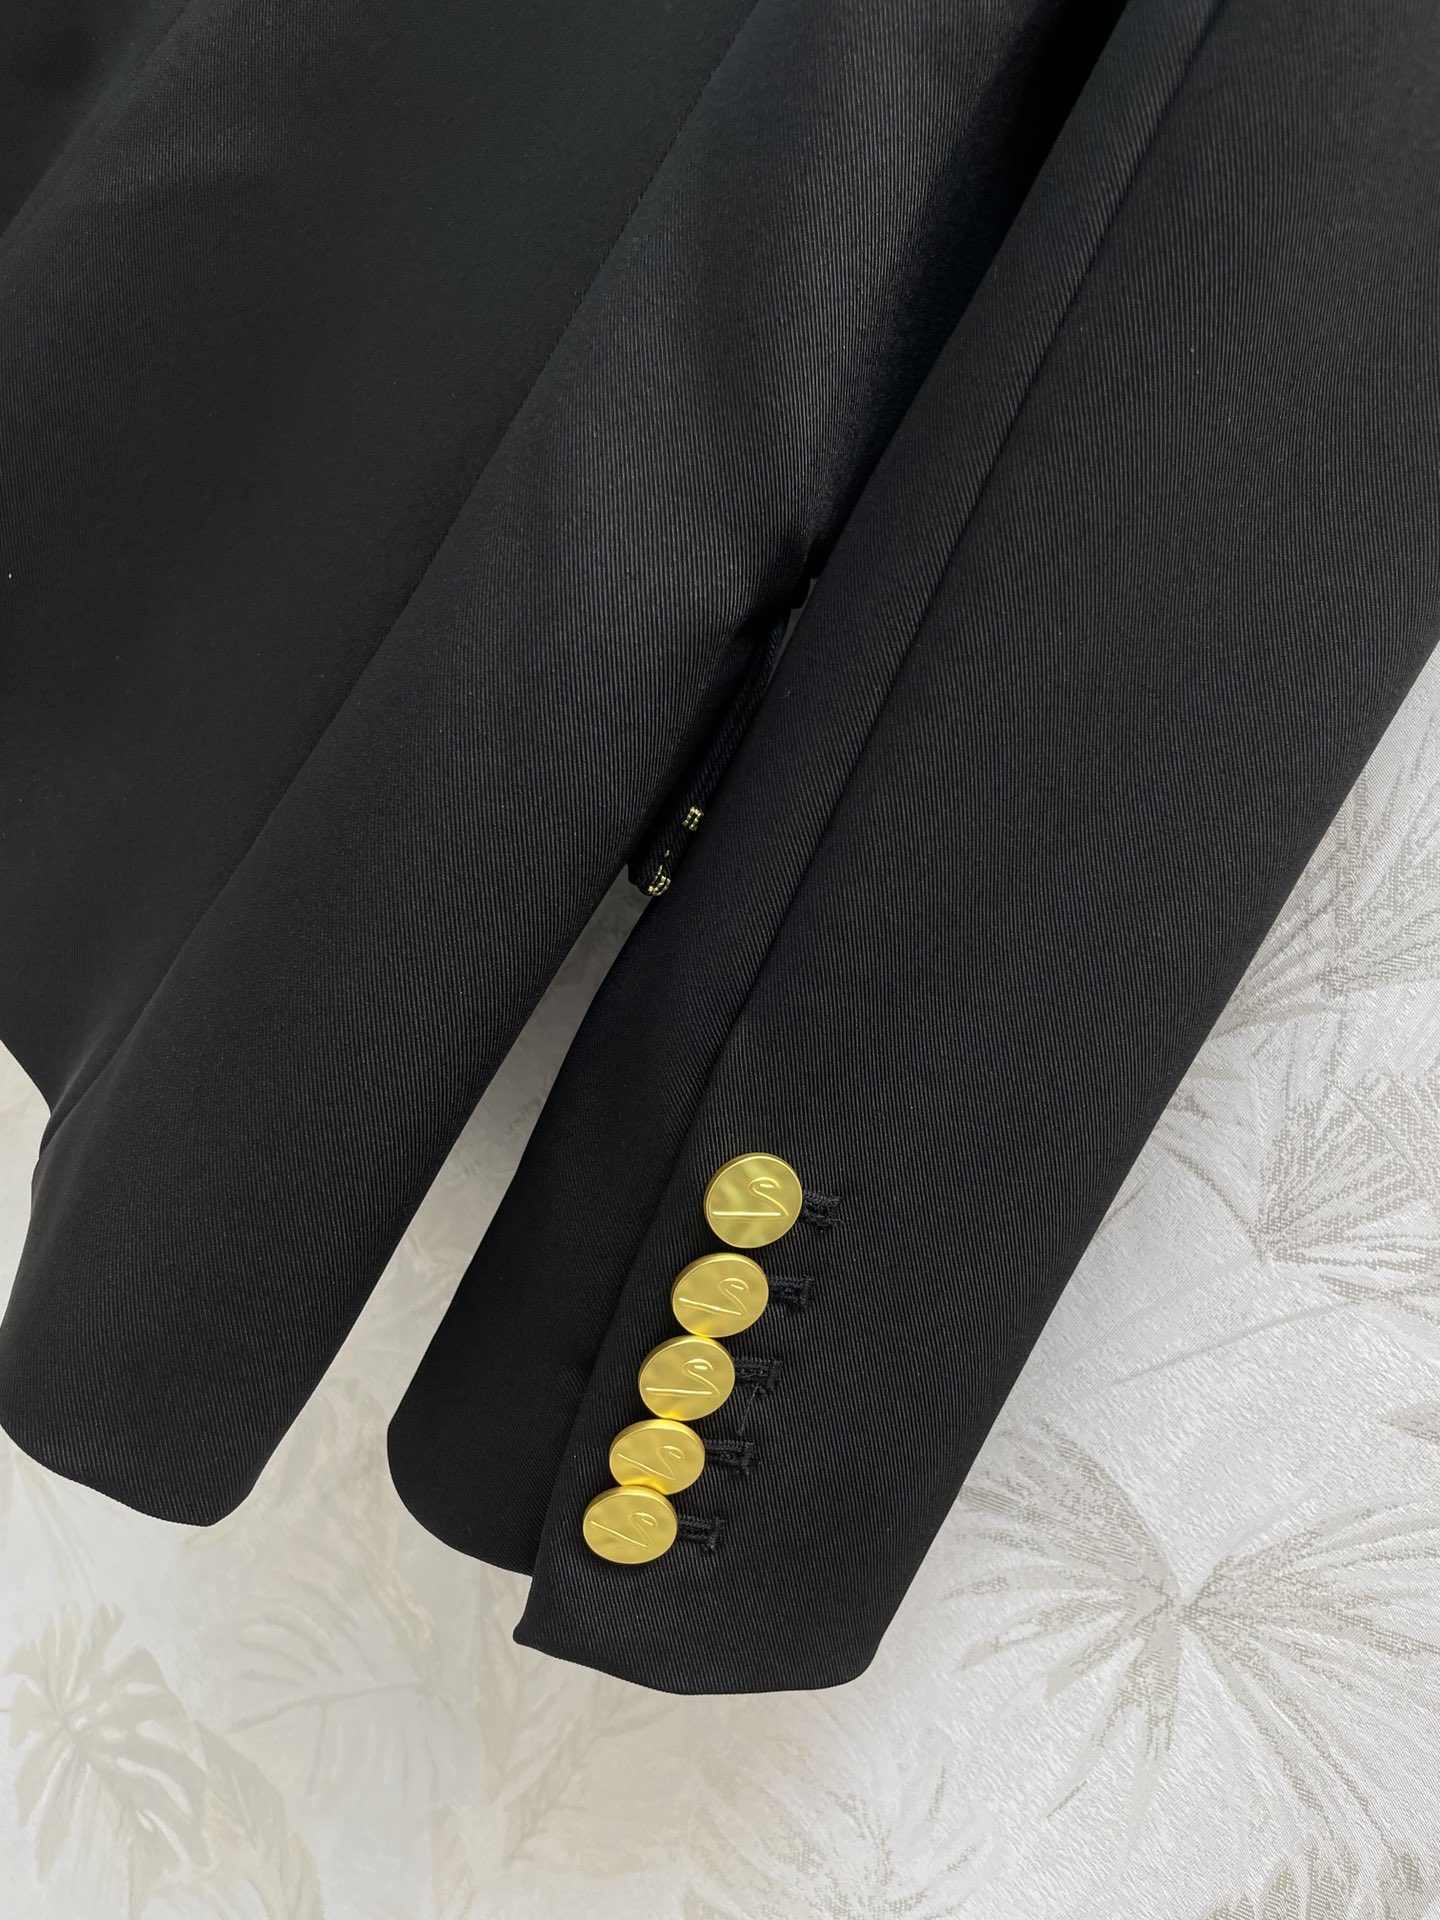 24早春Schiaparelli撞色刺绣尺寸图线条勾勒西装外套经典廓形剪裁整个设计简洁有亮点采用撞色明线